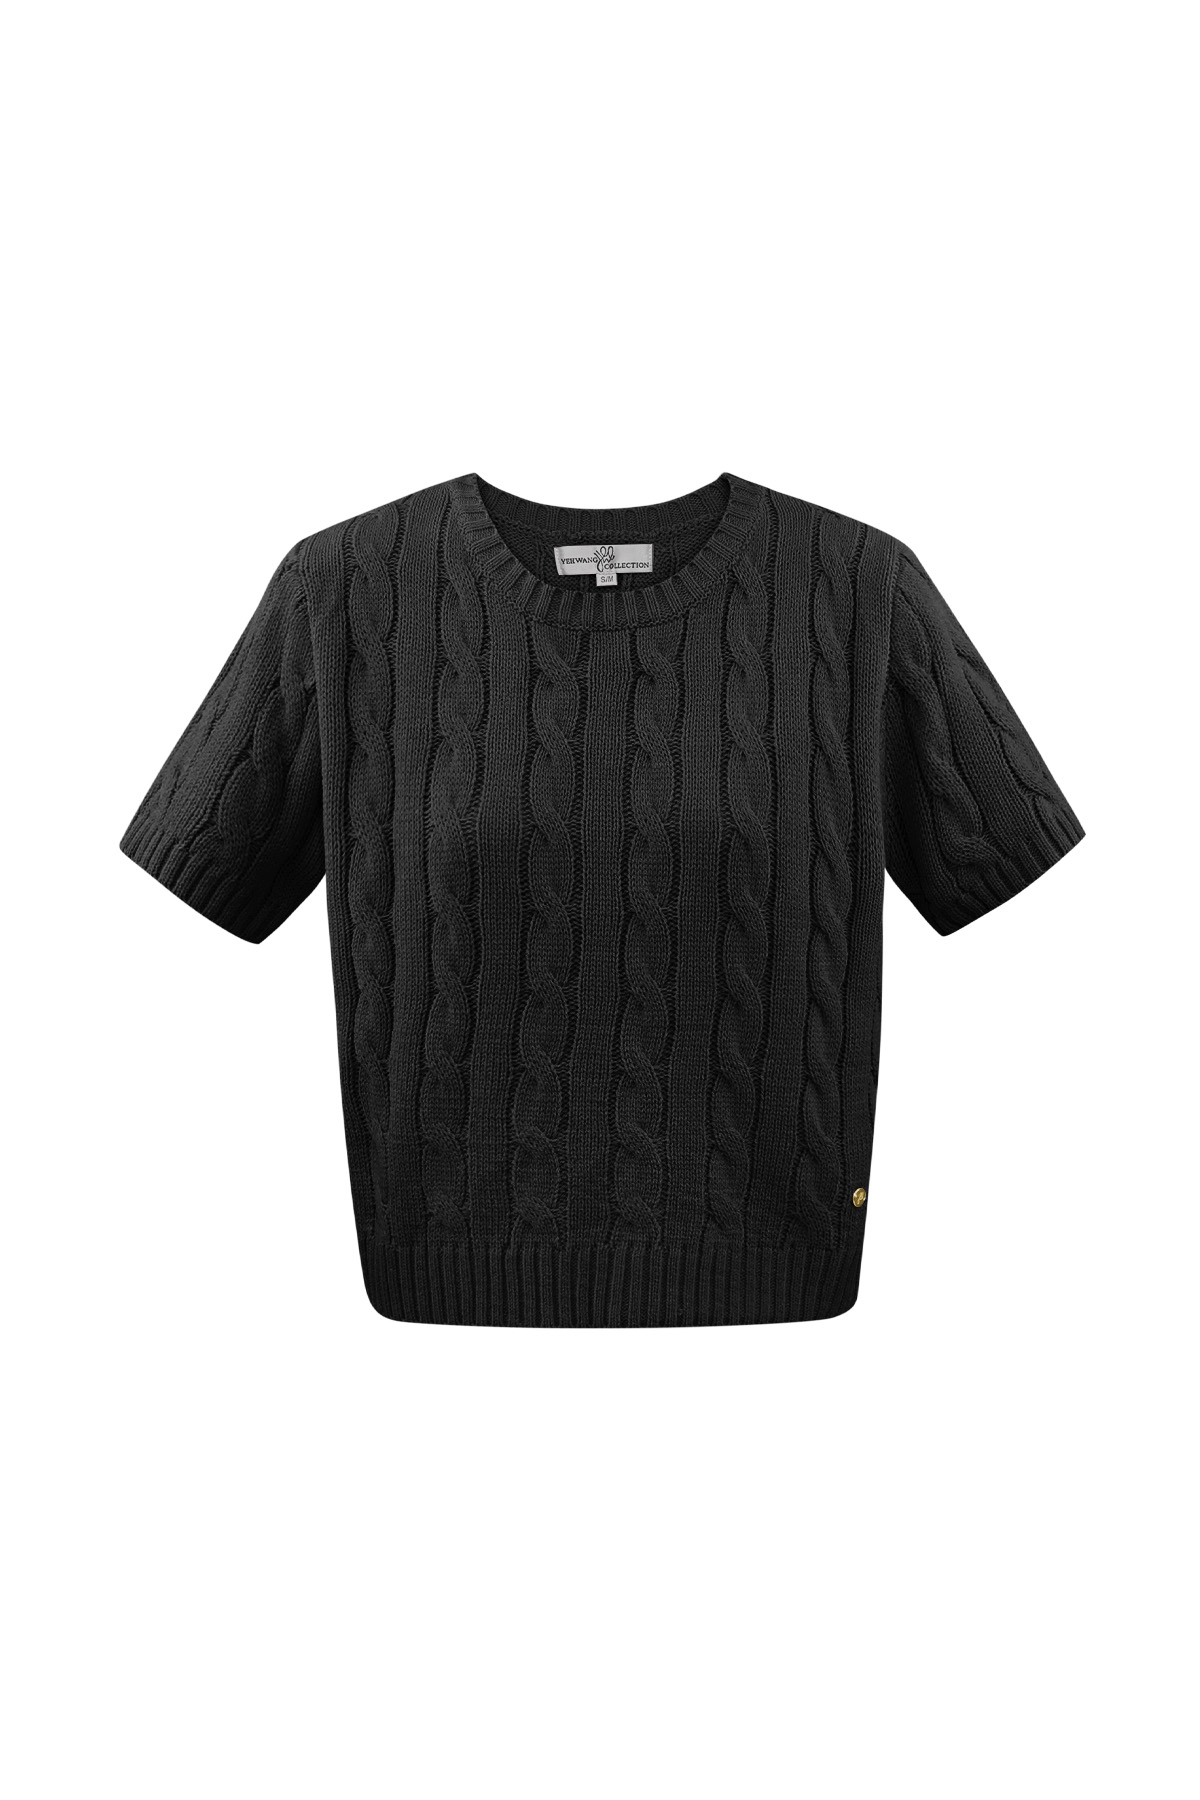 Classico maglione lavorato a trecce con maniche corte large/extra large – nero h5 